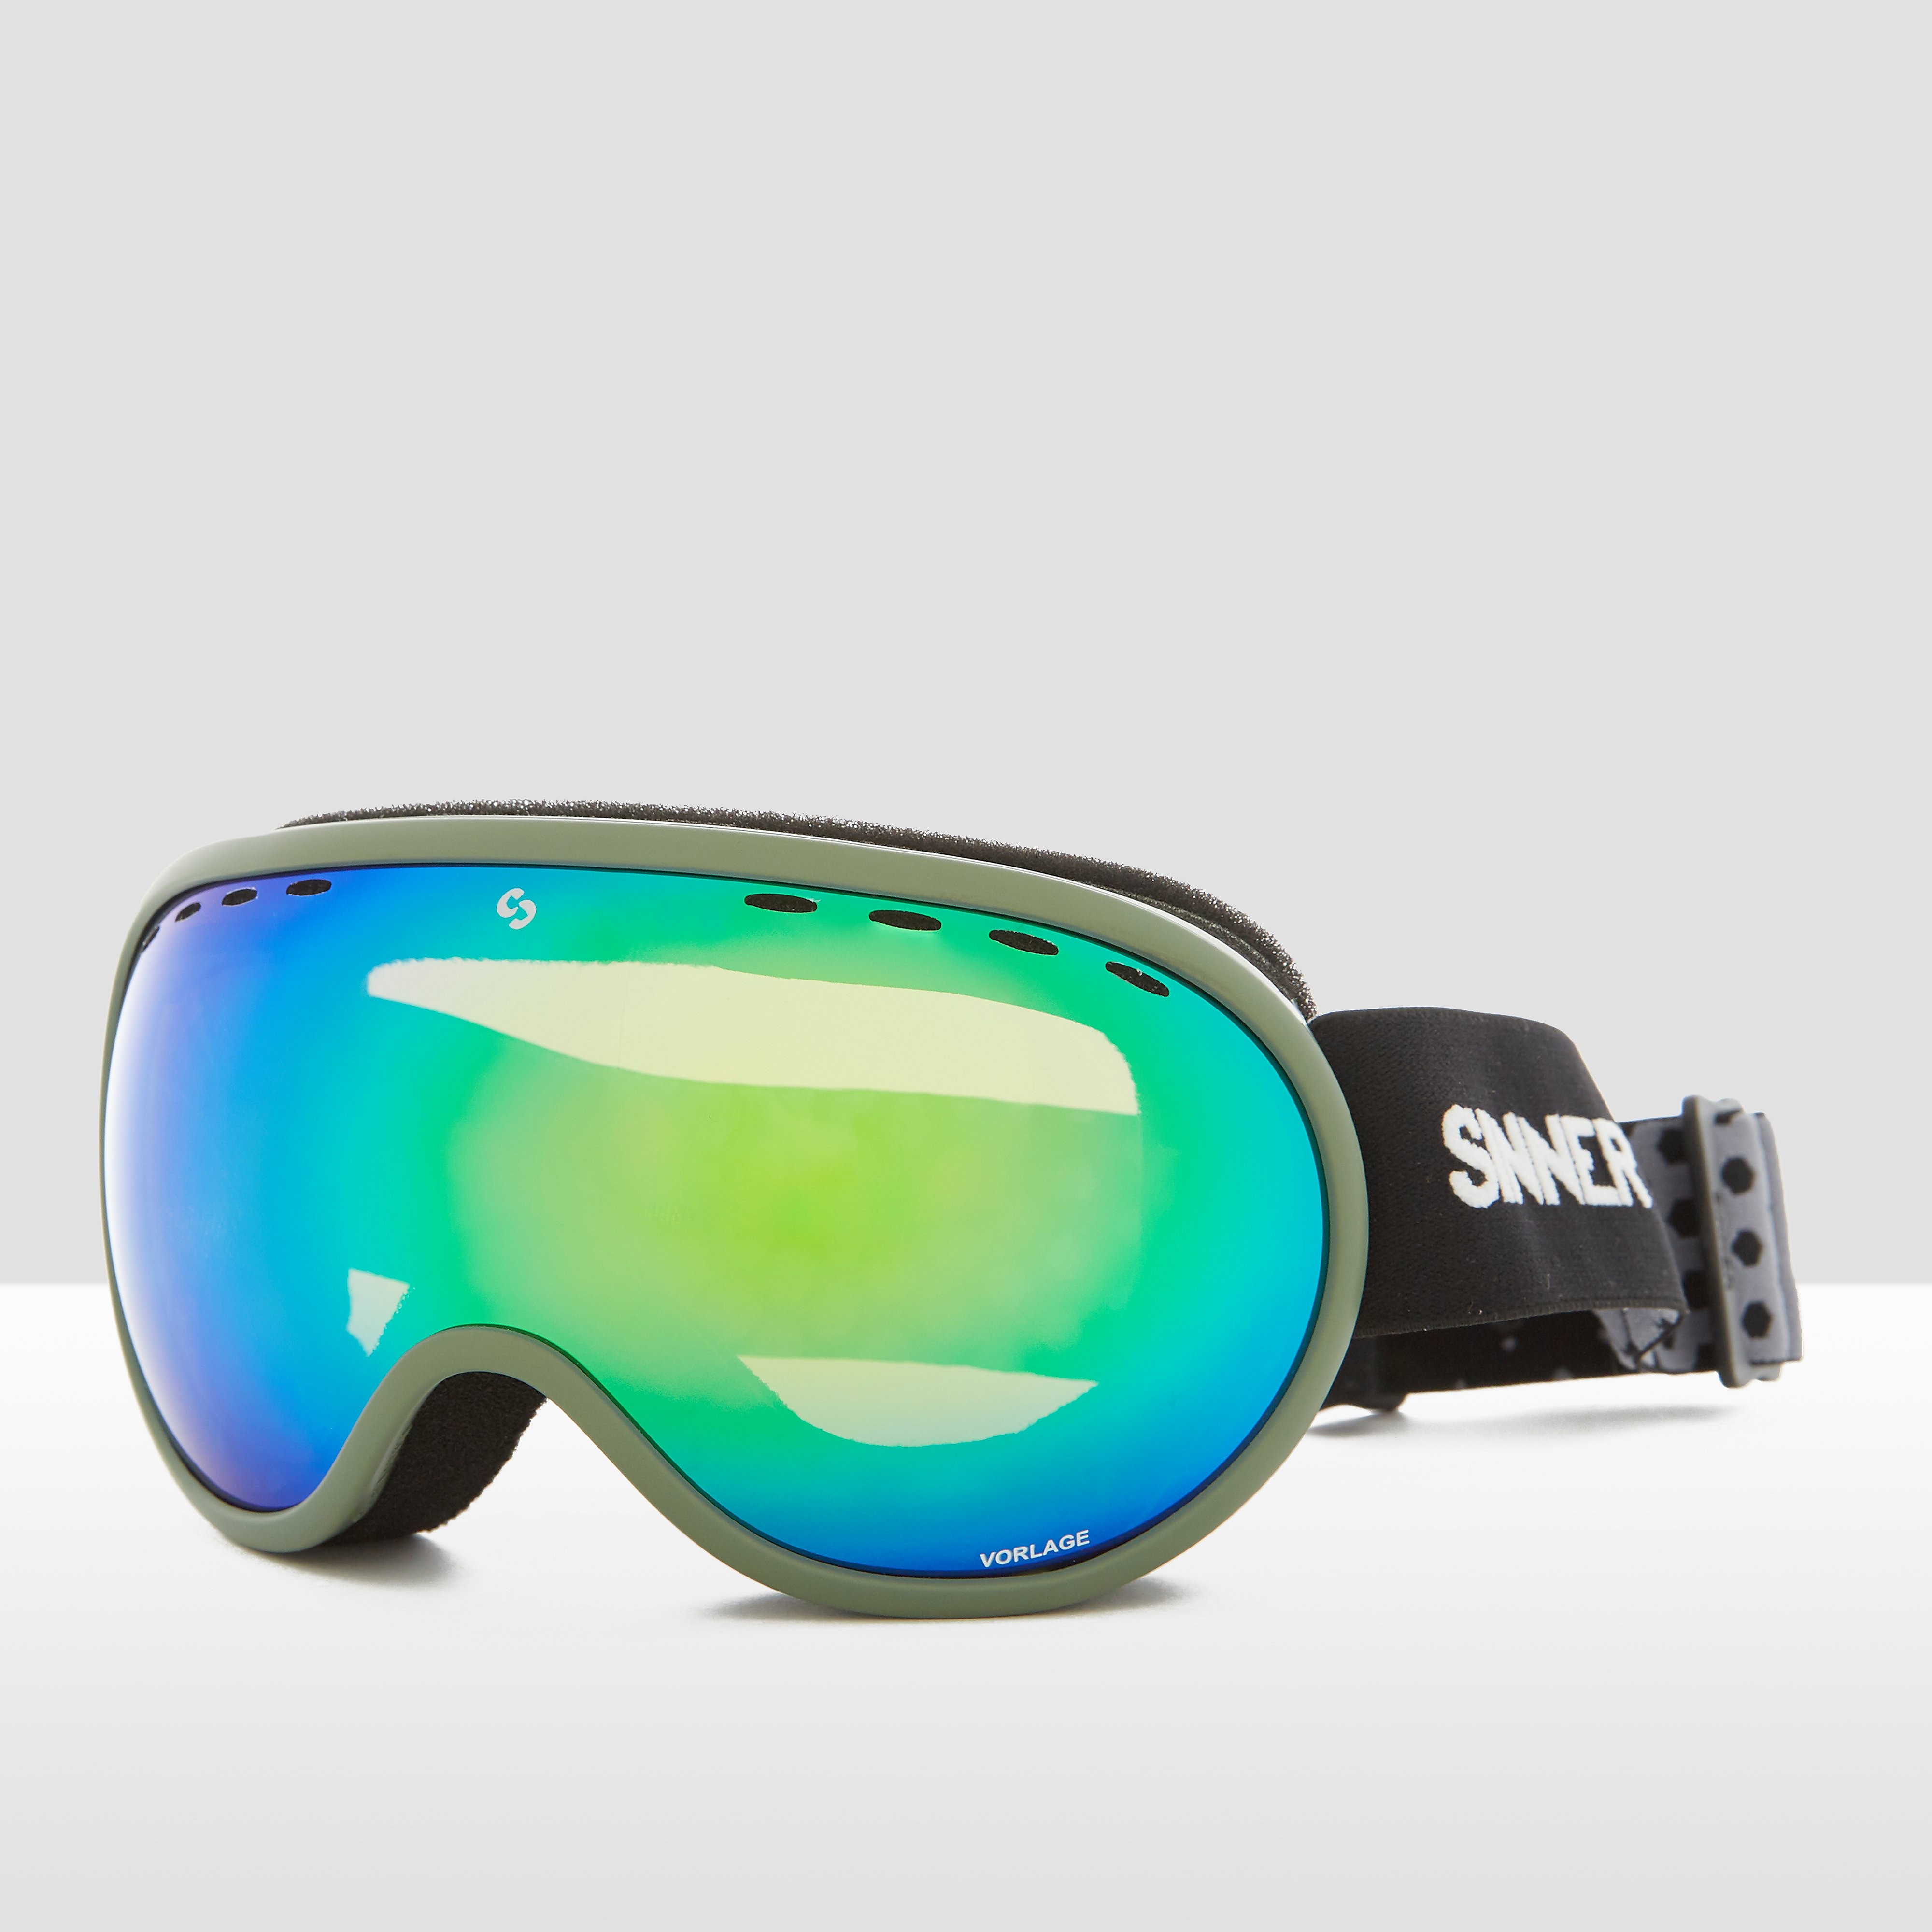 Sinner vorlage skibril zwart/groen